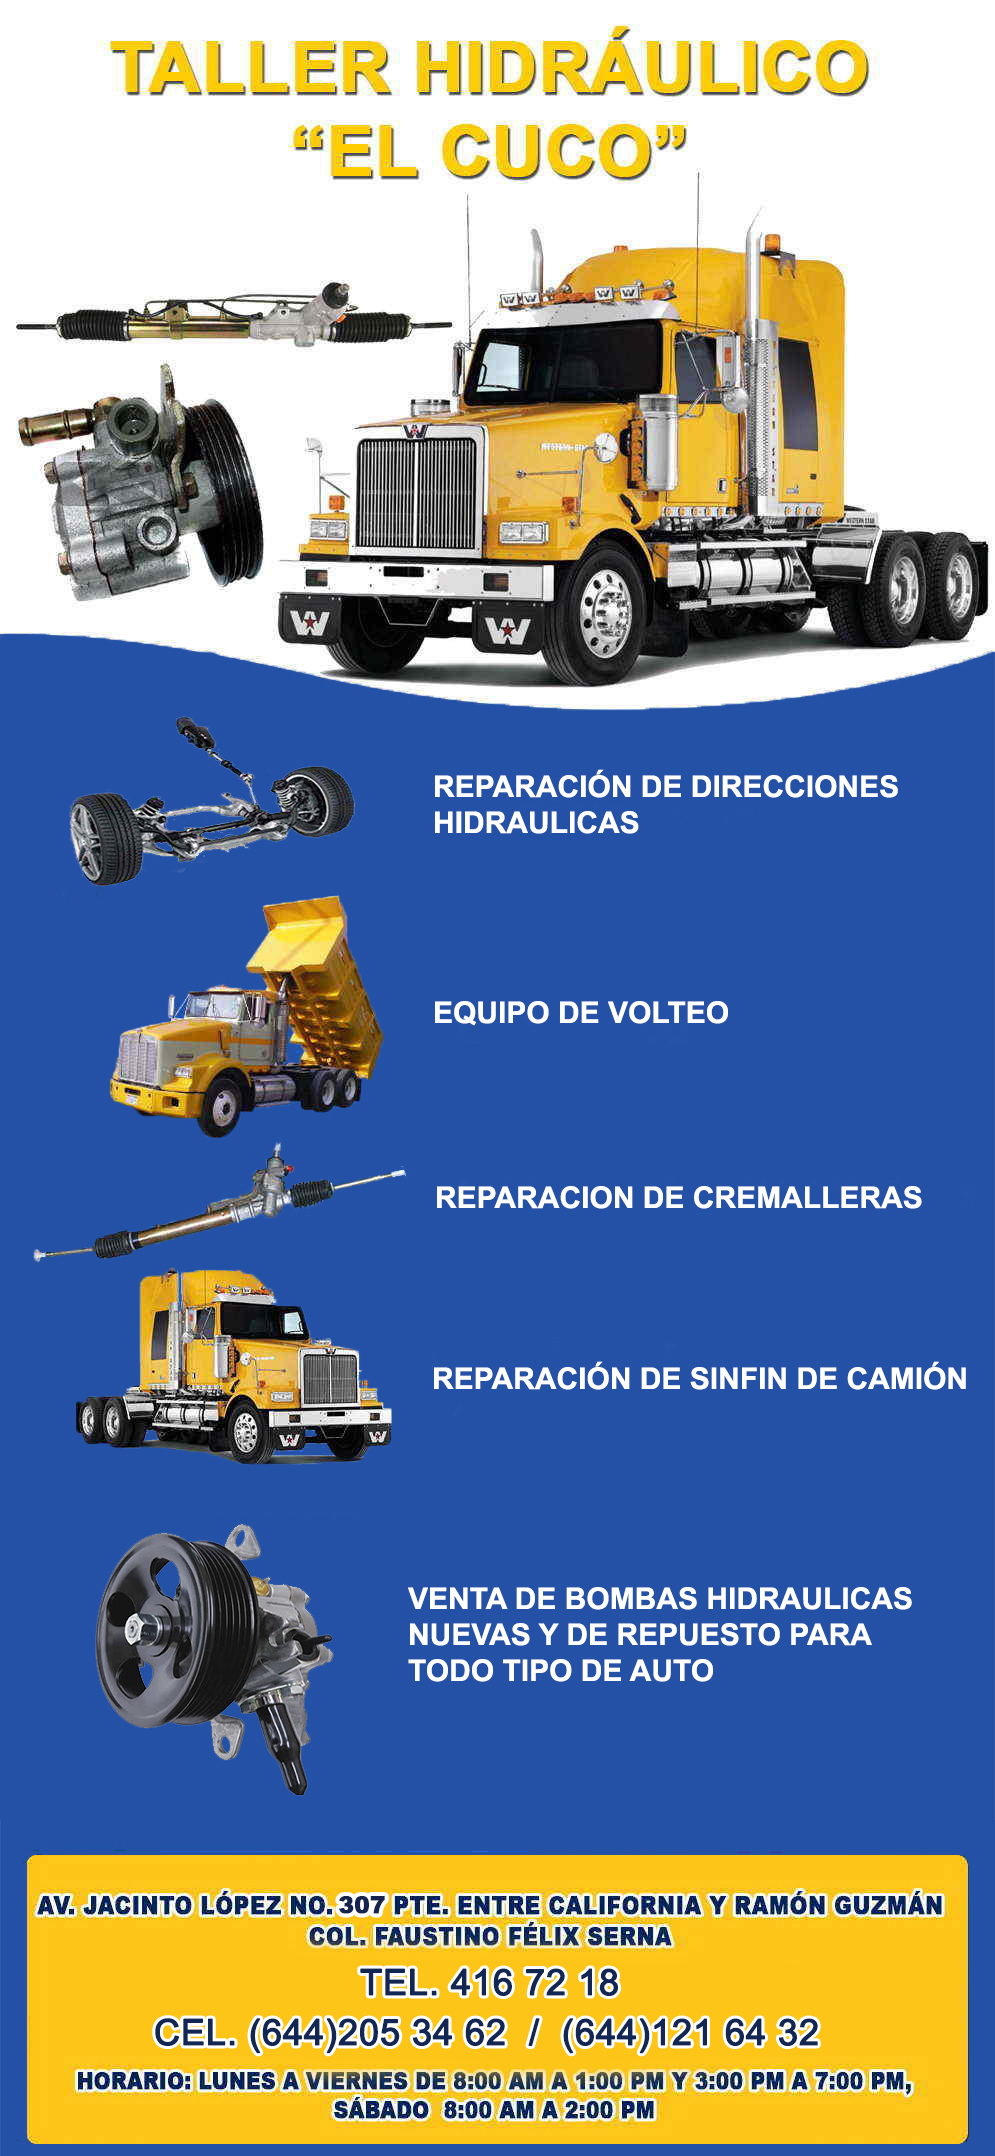 Taller Hidraulico EL CUCO-ReparaciÃ³n de Direcciones Hidraulicas, Equipo de Volteo, ReparaciÃ³n de Cremalleras, ReparaciÃ³n de Sinfin.            